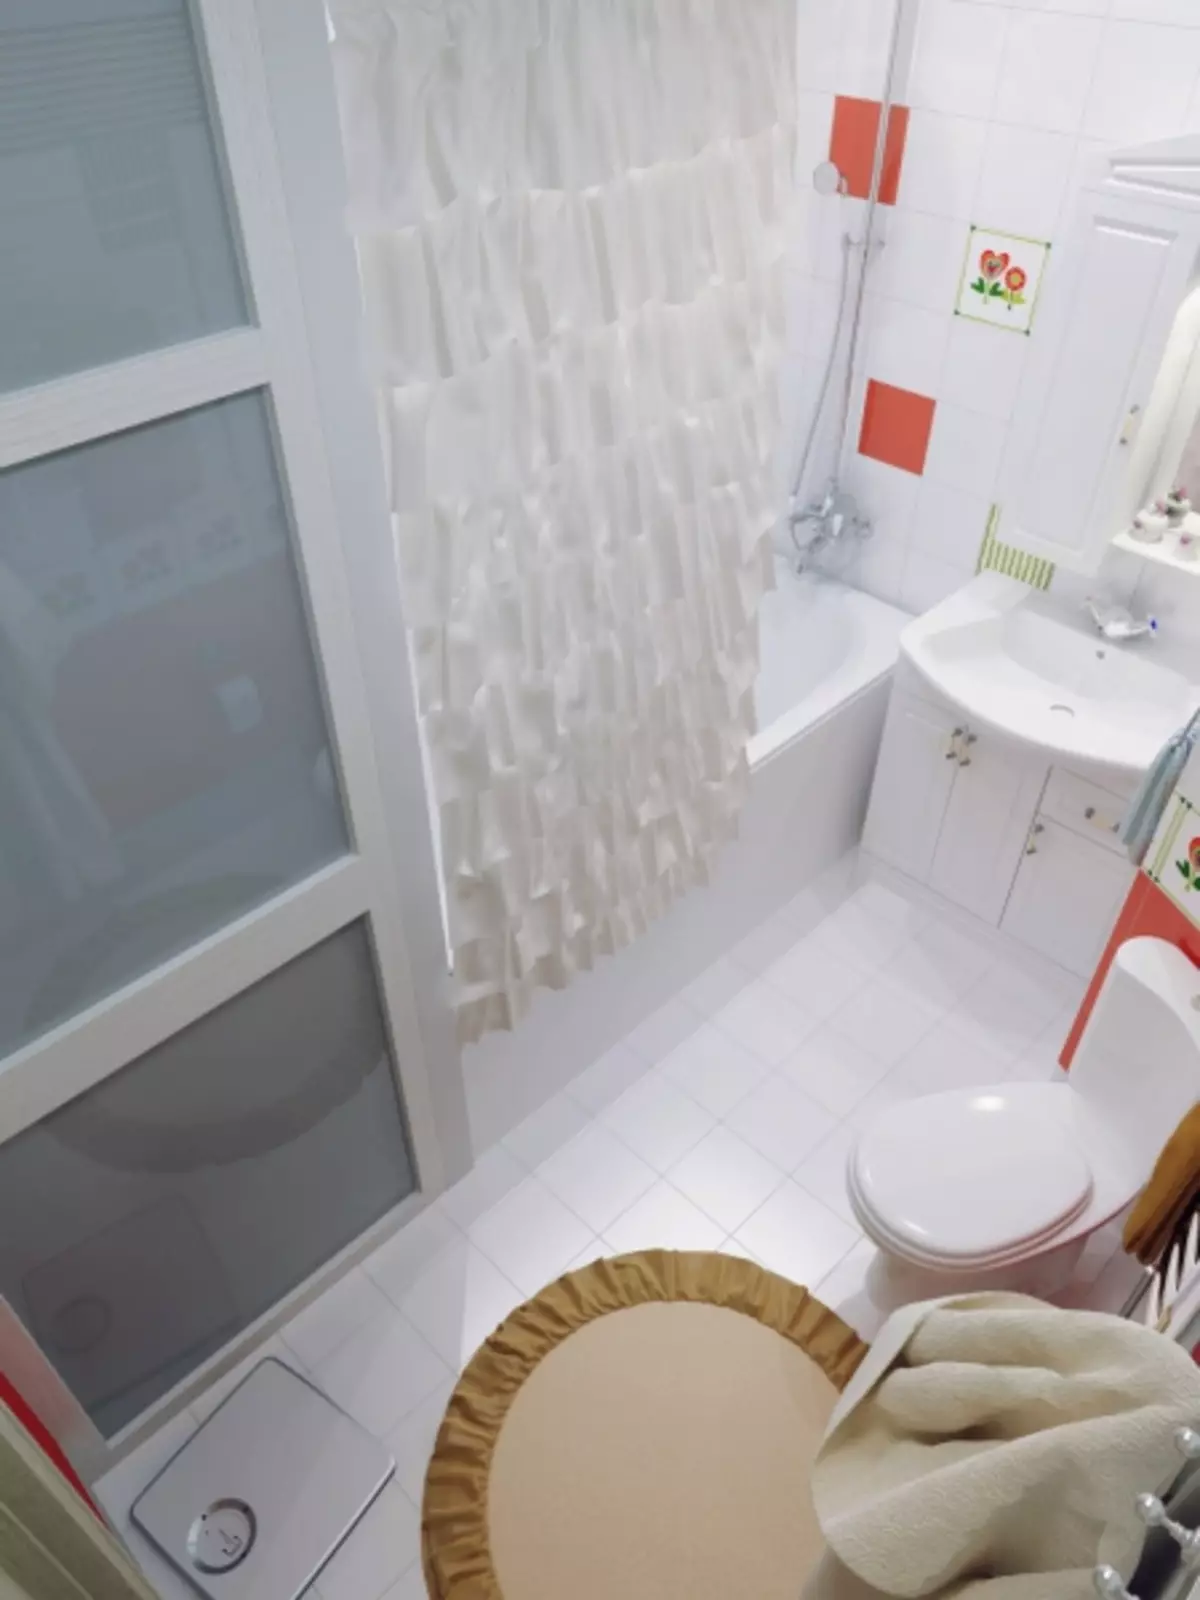 3-собни дизајн стана за породицу са двоје деце